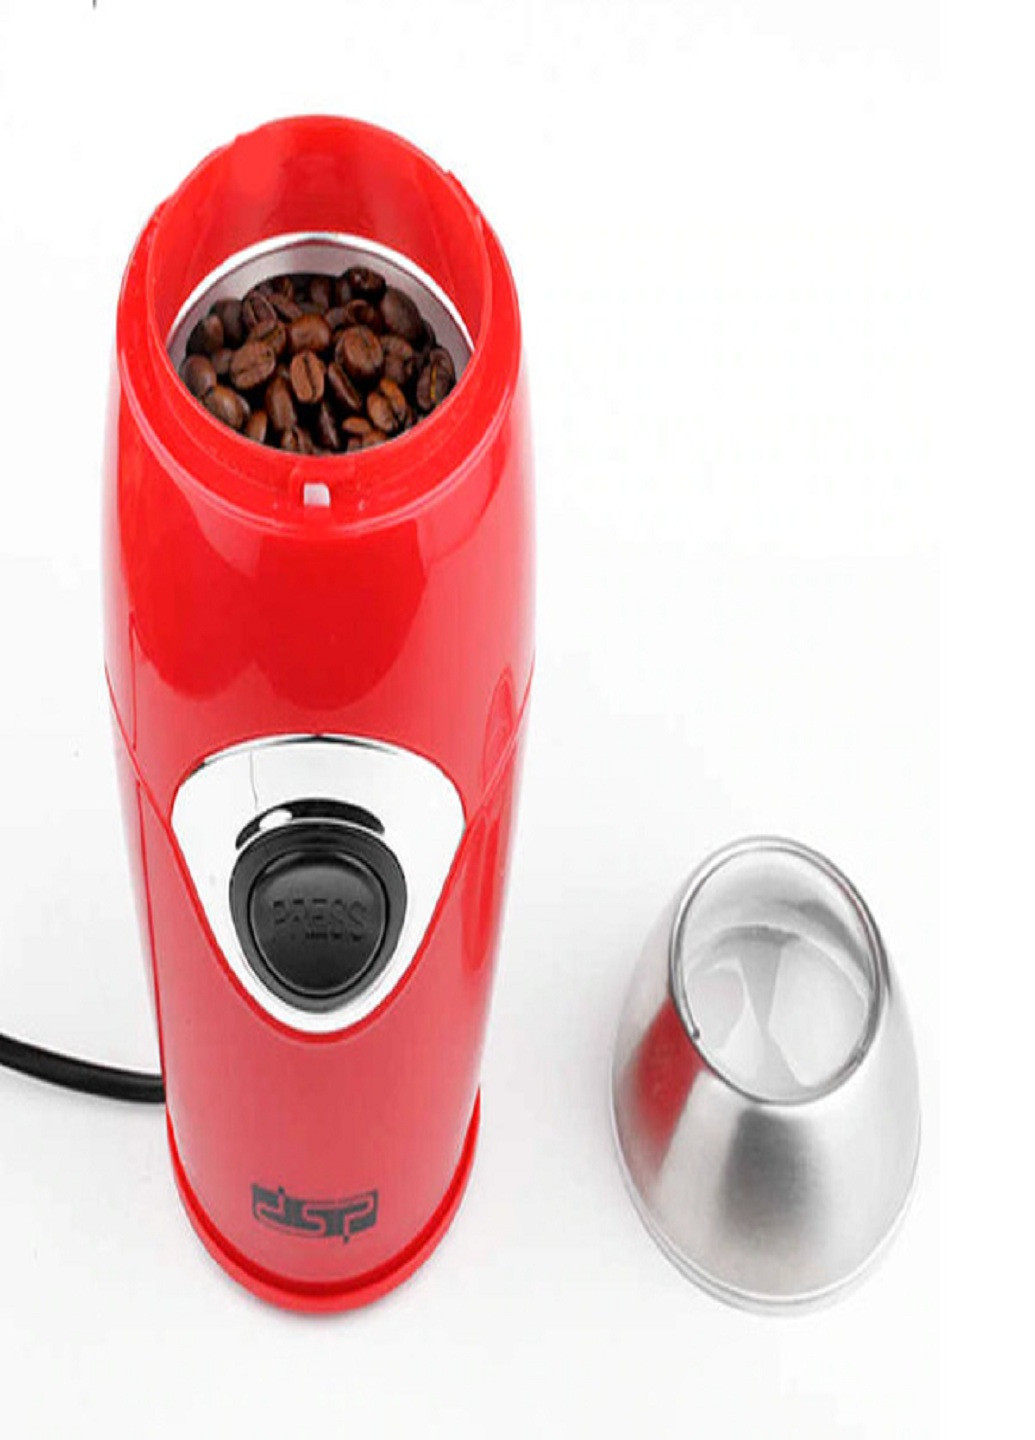 Электрическая кофемолка KA-3002 200 Вт Измельчитель кофе DSP (253720283)